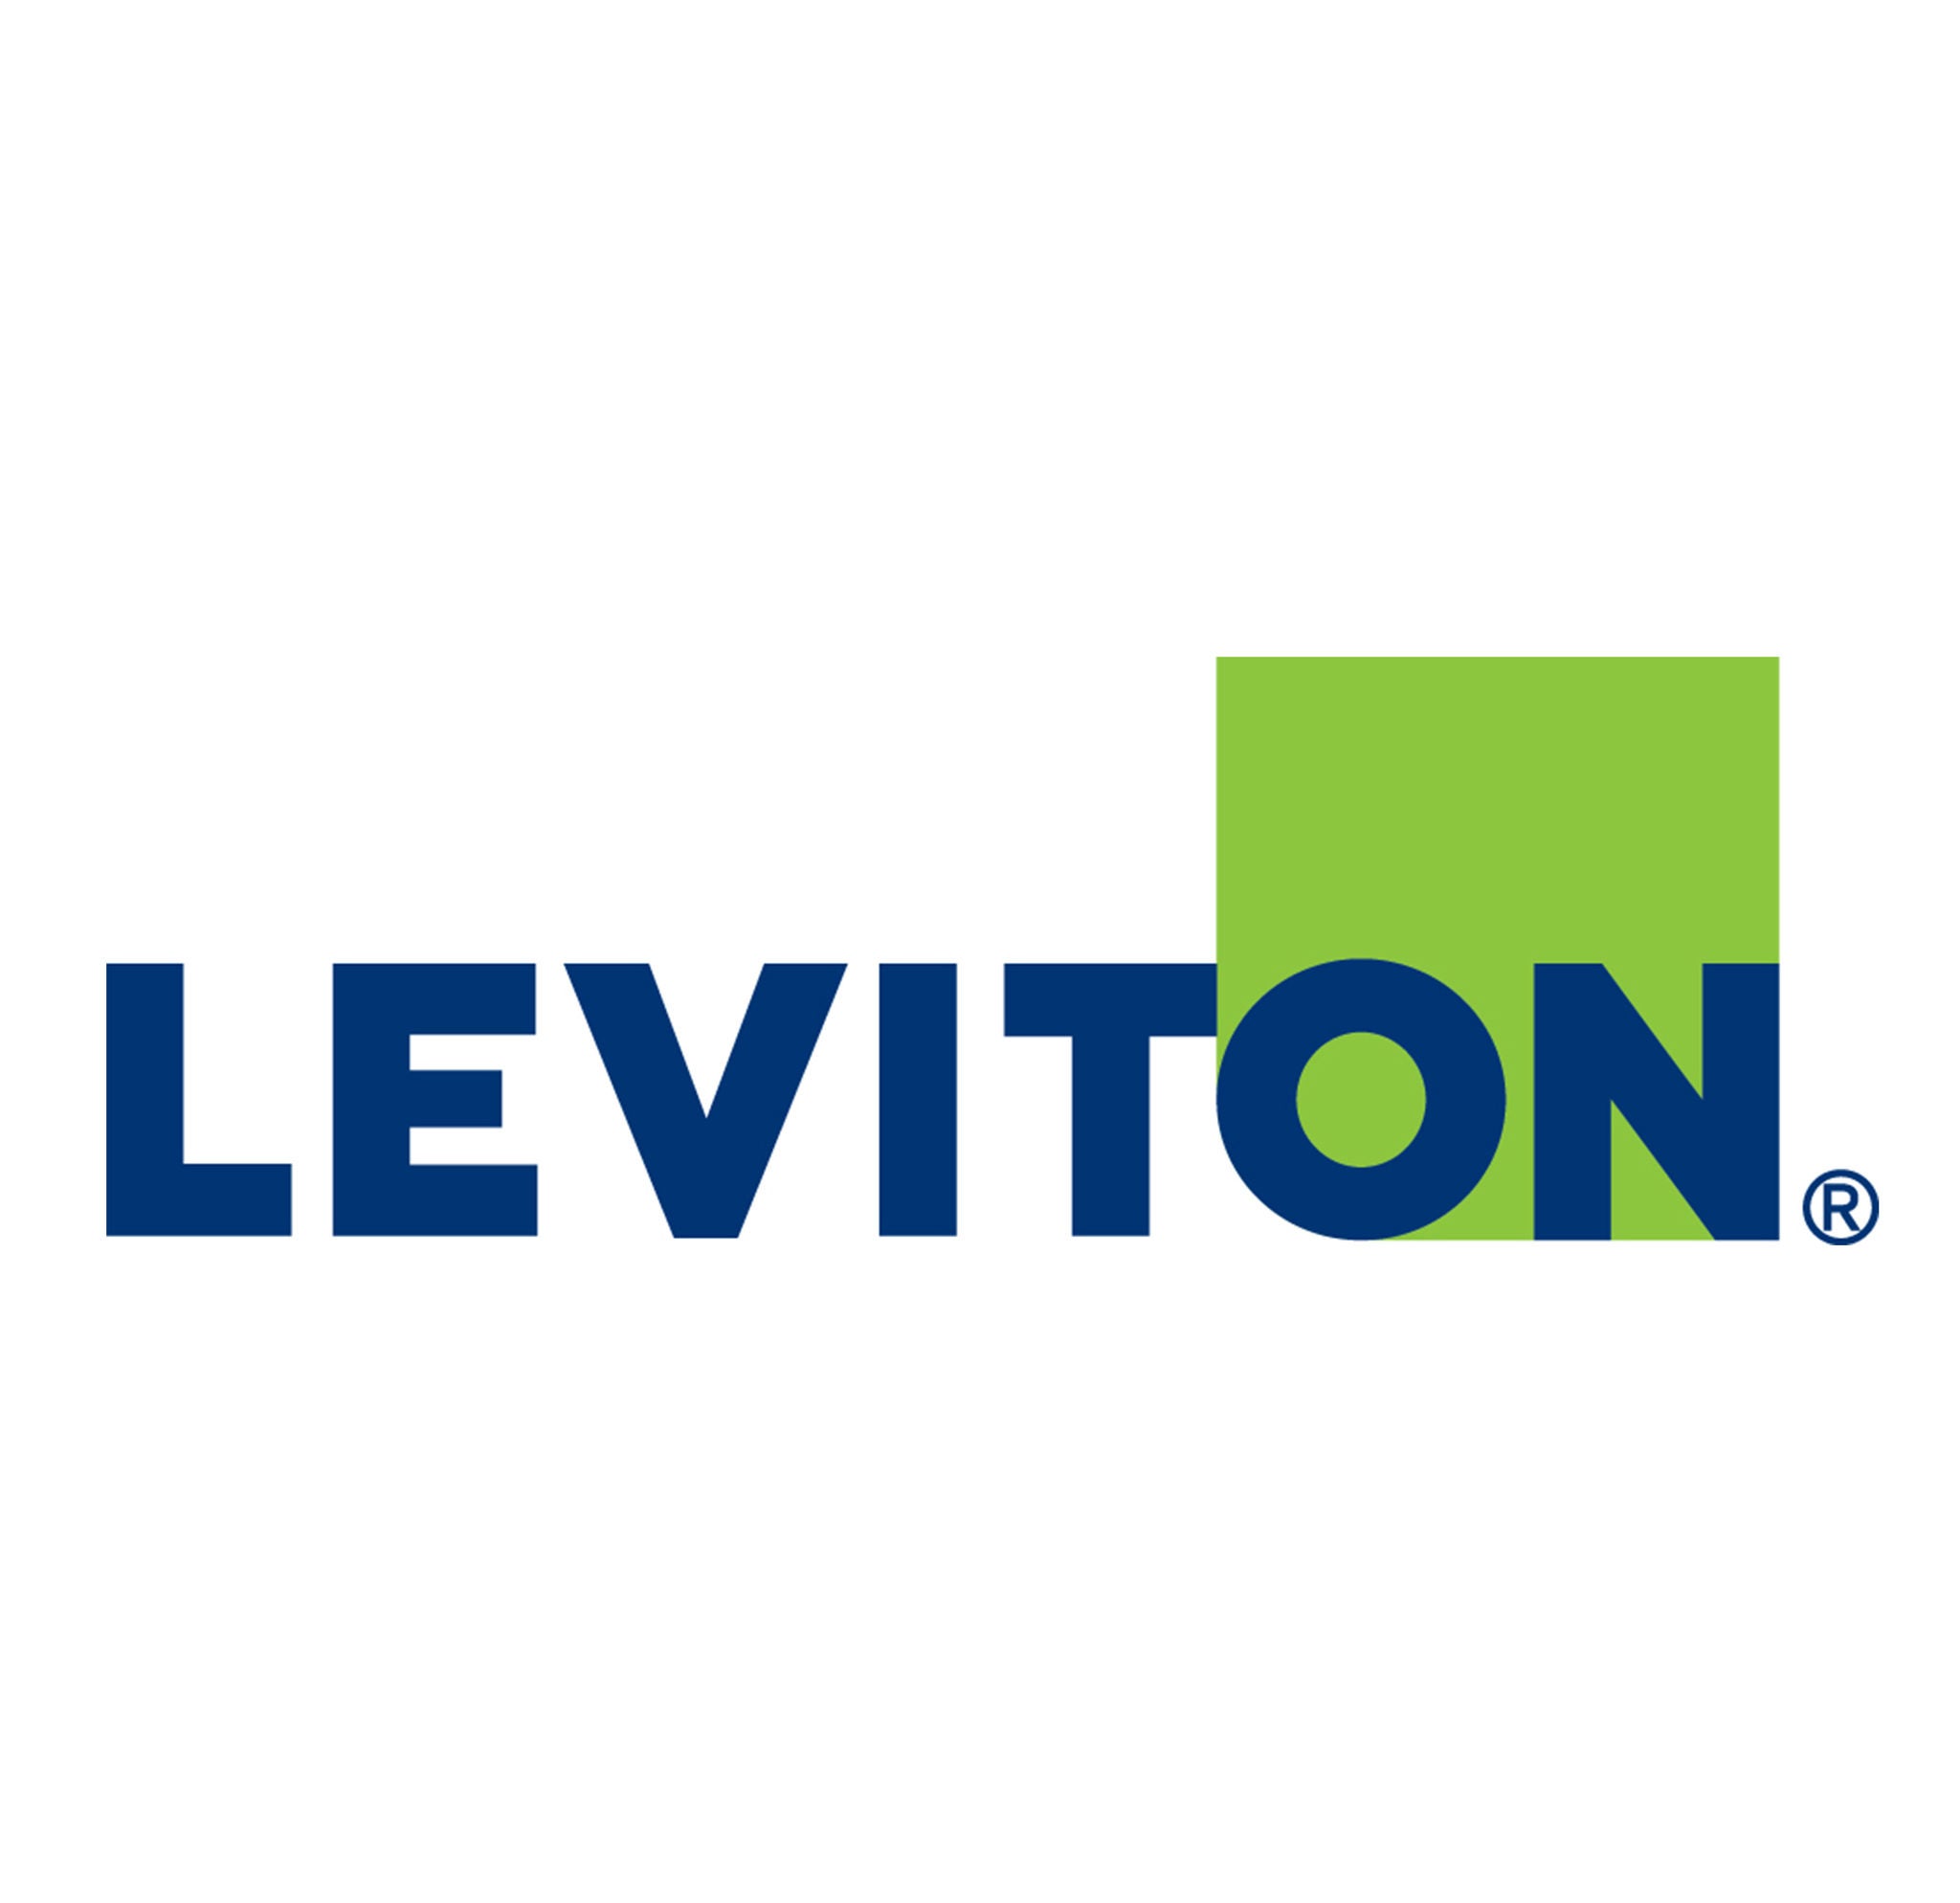 leviton preferred logo